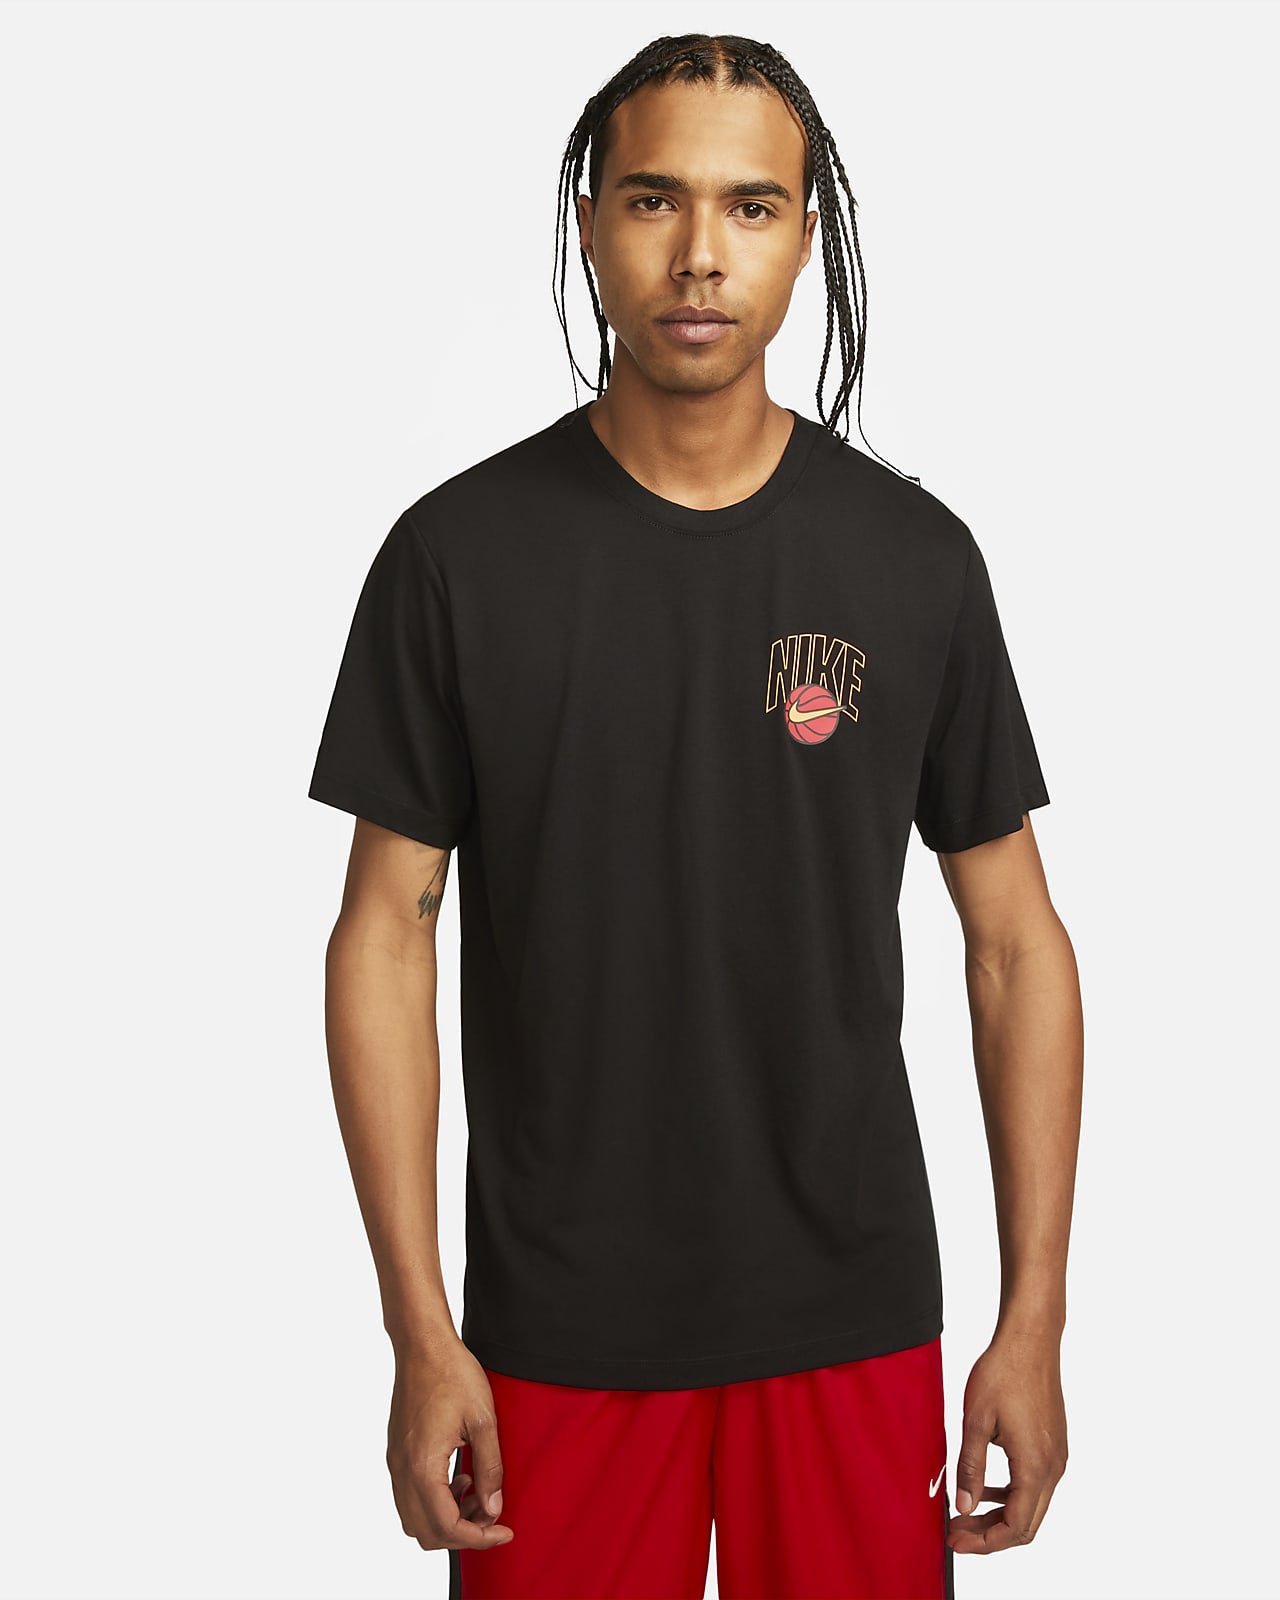 나이키 드라이 핏 남성 농구 티셔츠